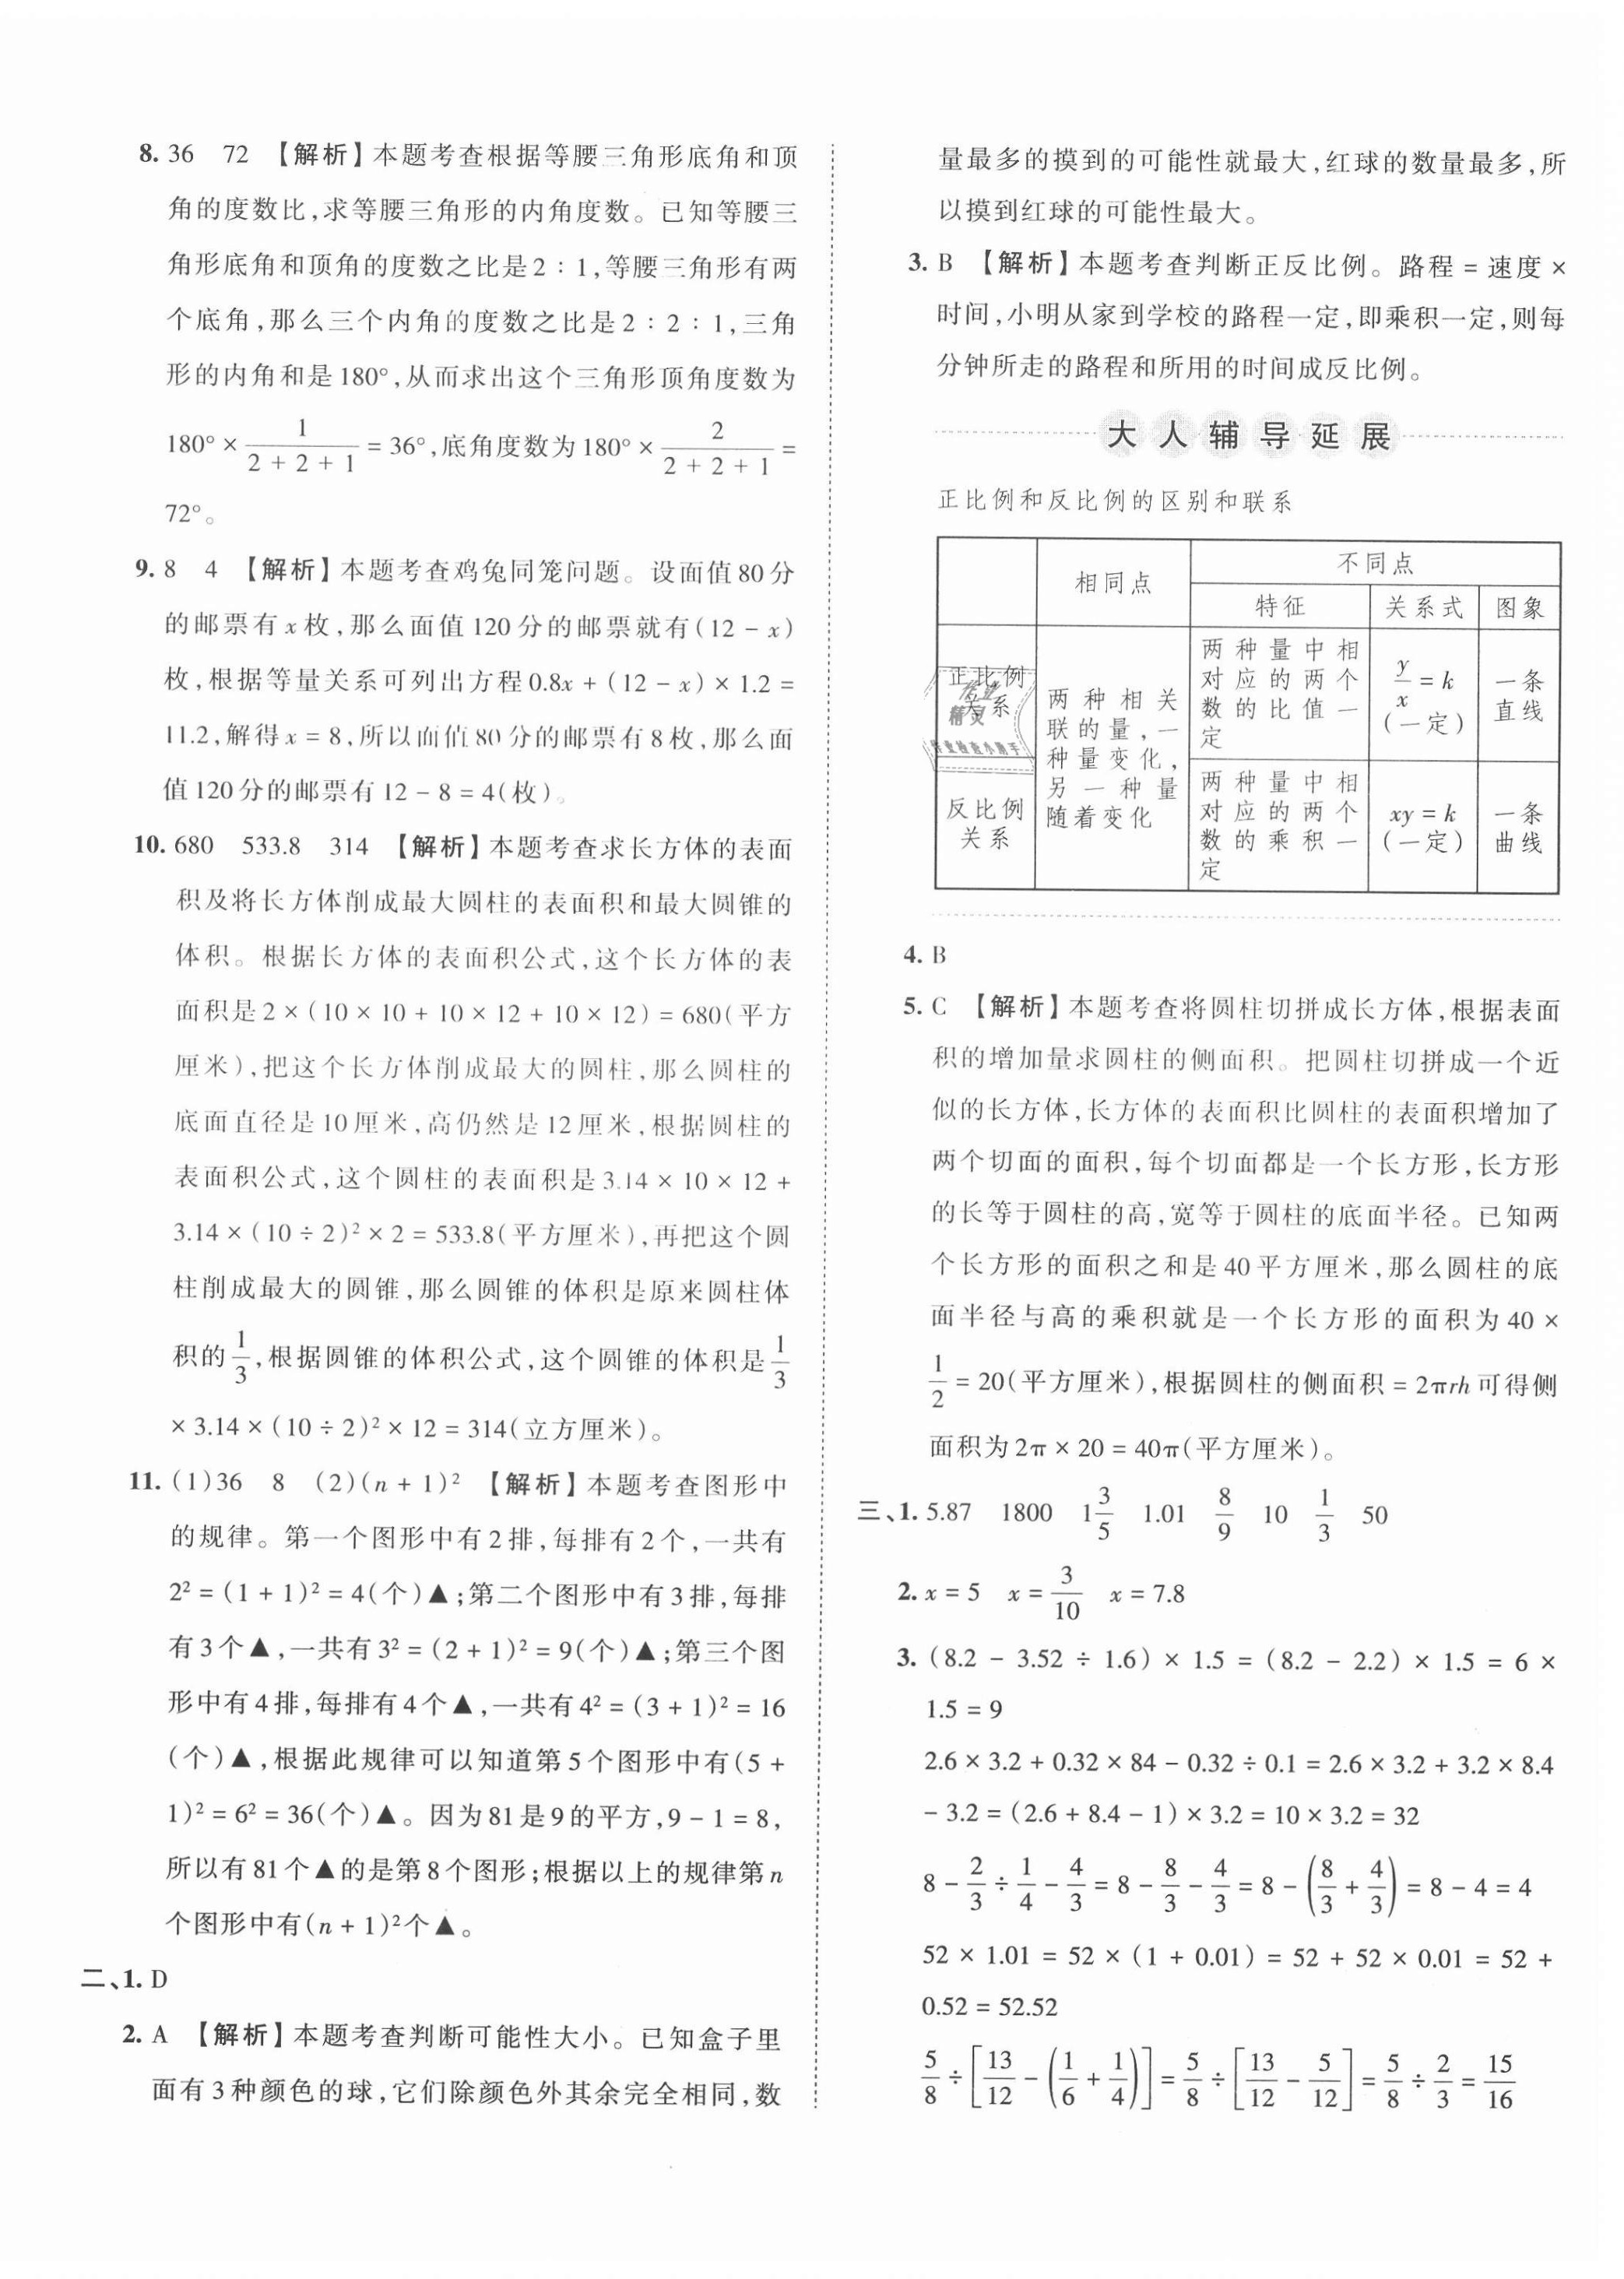 2021年王朝霞小升初重点校毕业升学及招生分班数学 第8页